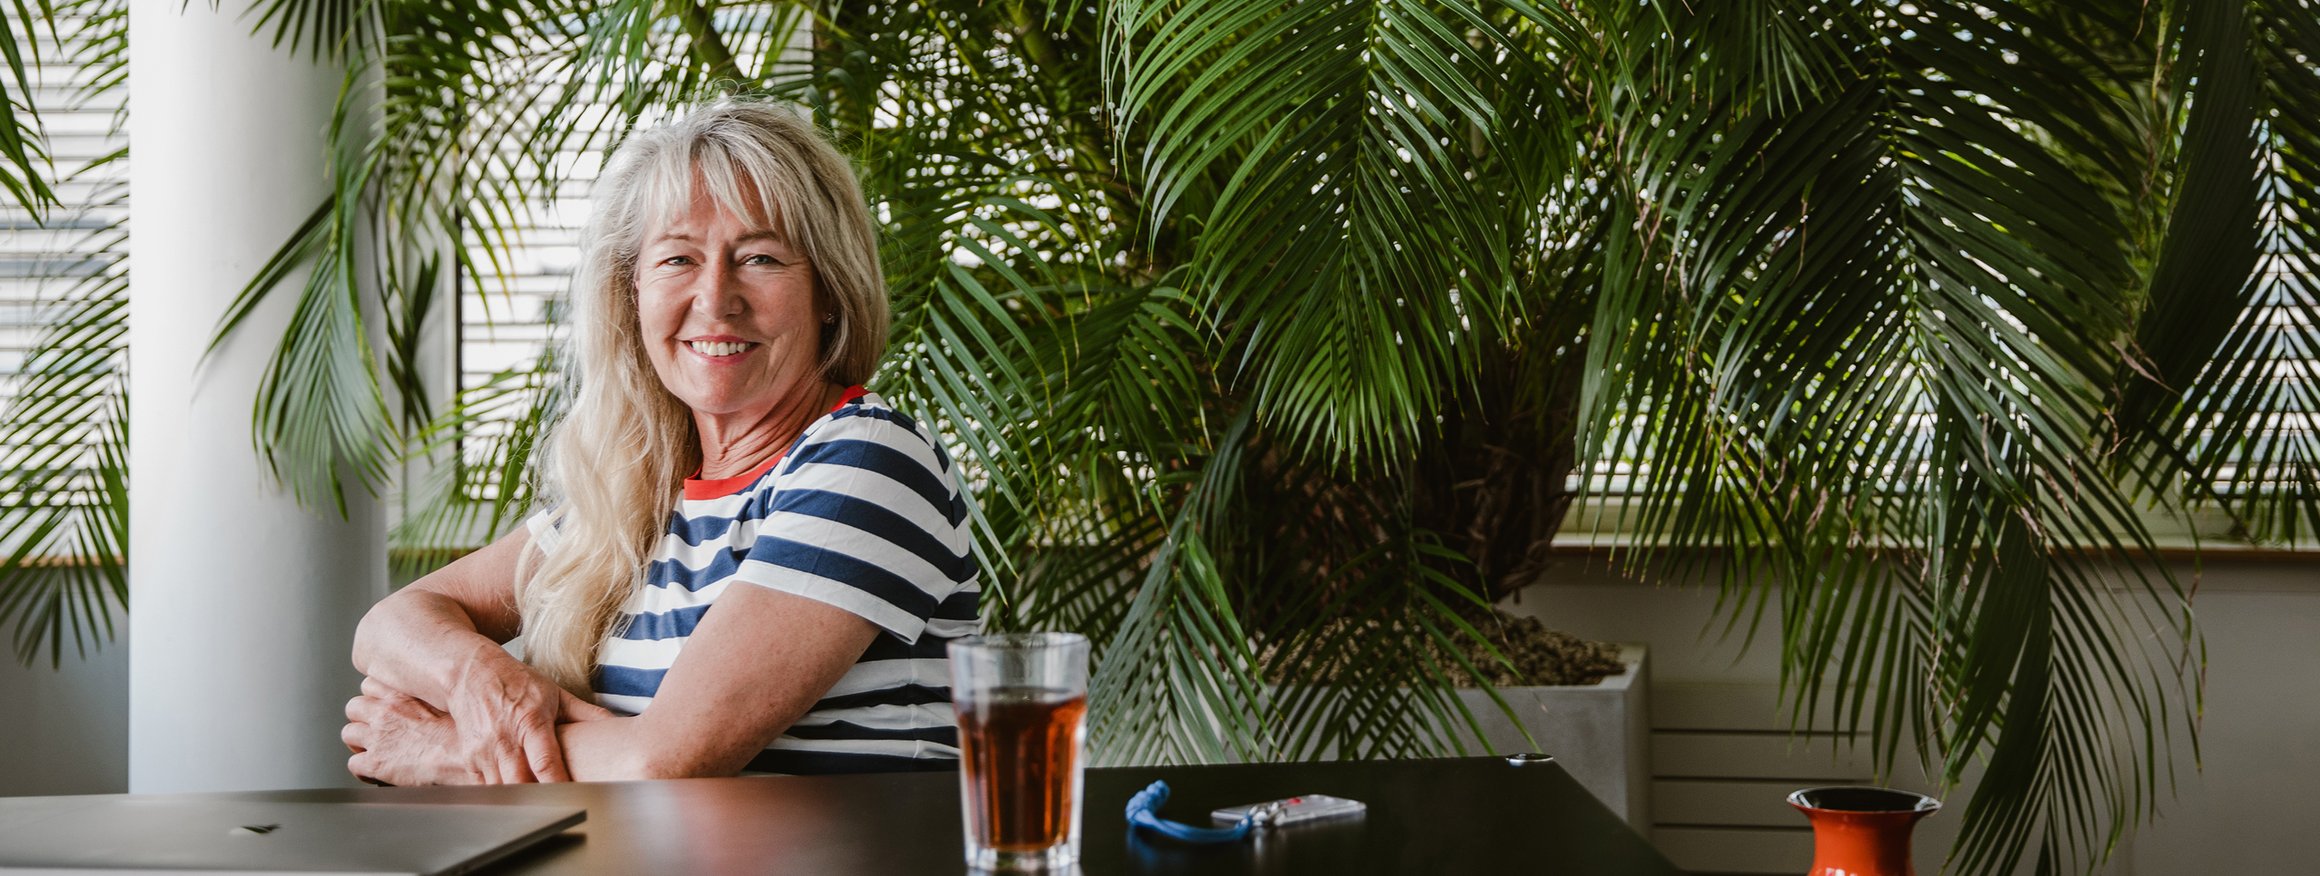 Die Stressforscherin Ulrike Ehlert sitzt entspannt in einem Zimmer an einem Tisch und lächelt, dahinter sind viele Palmen im Raum zu sehen